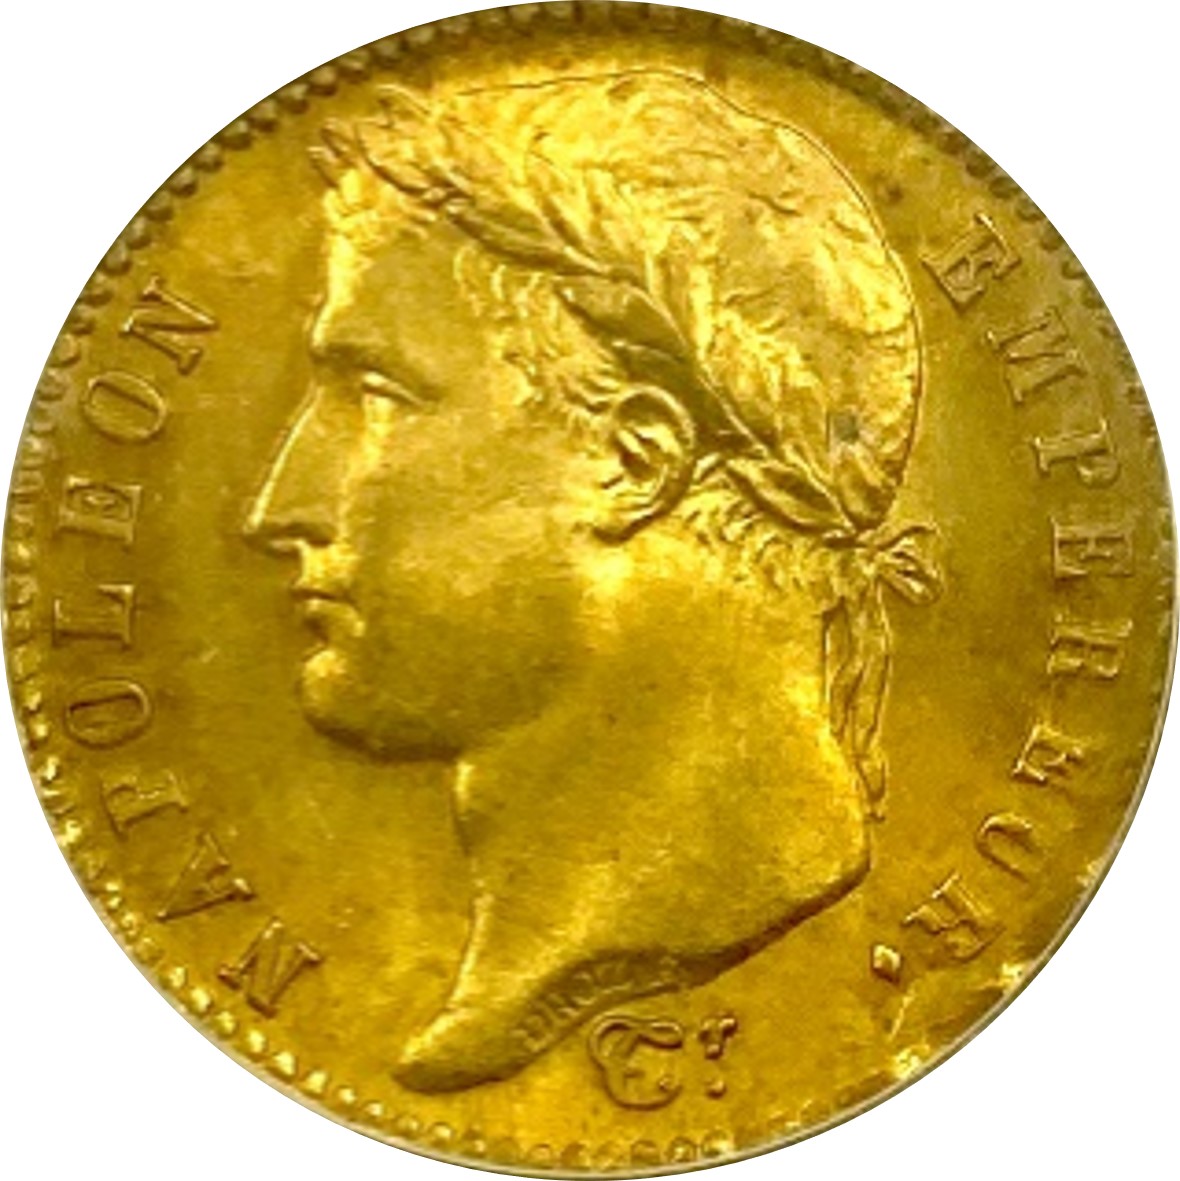 フランス ナポレオン1世 (1804-1814,1815) 20フラン金貨 1811A Gad1025 